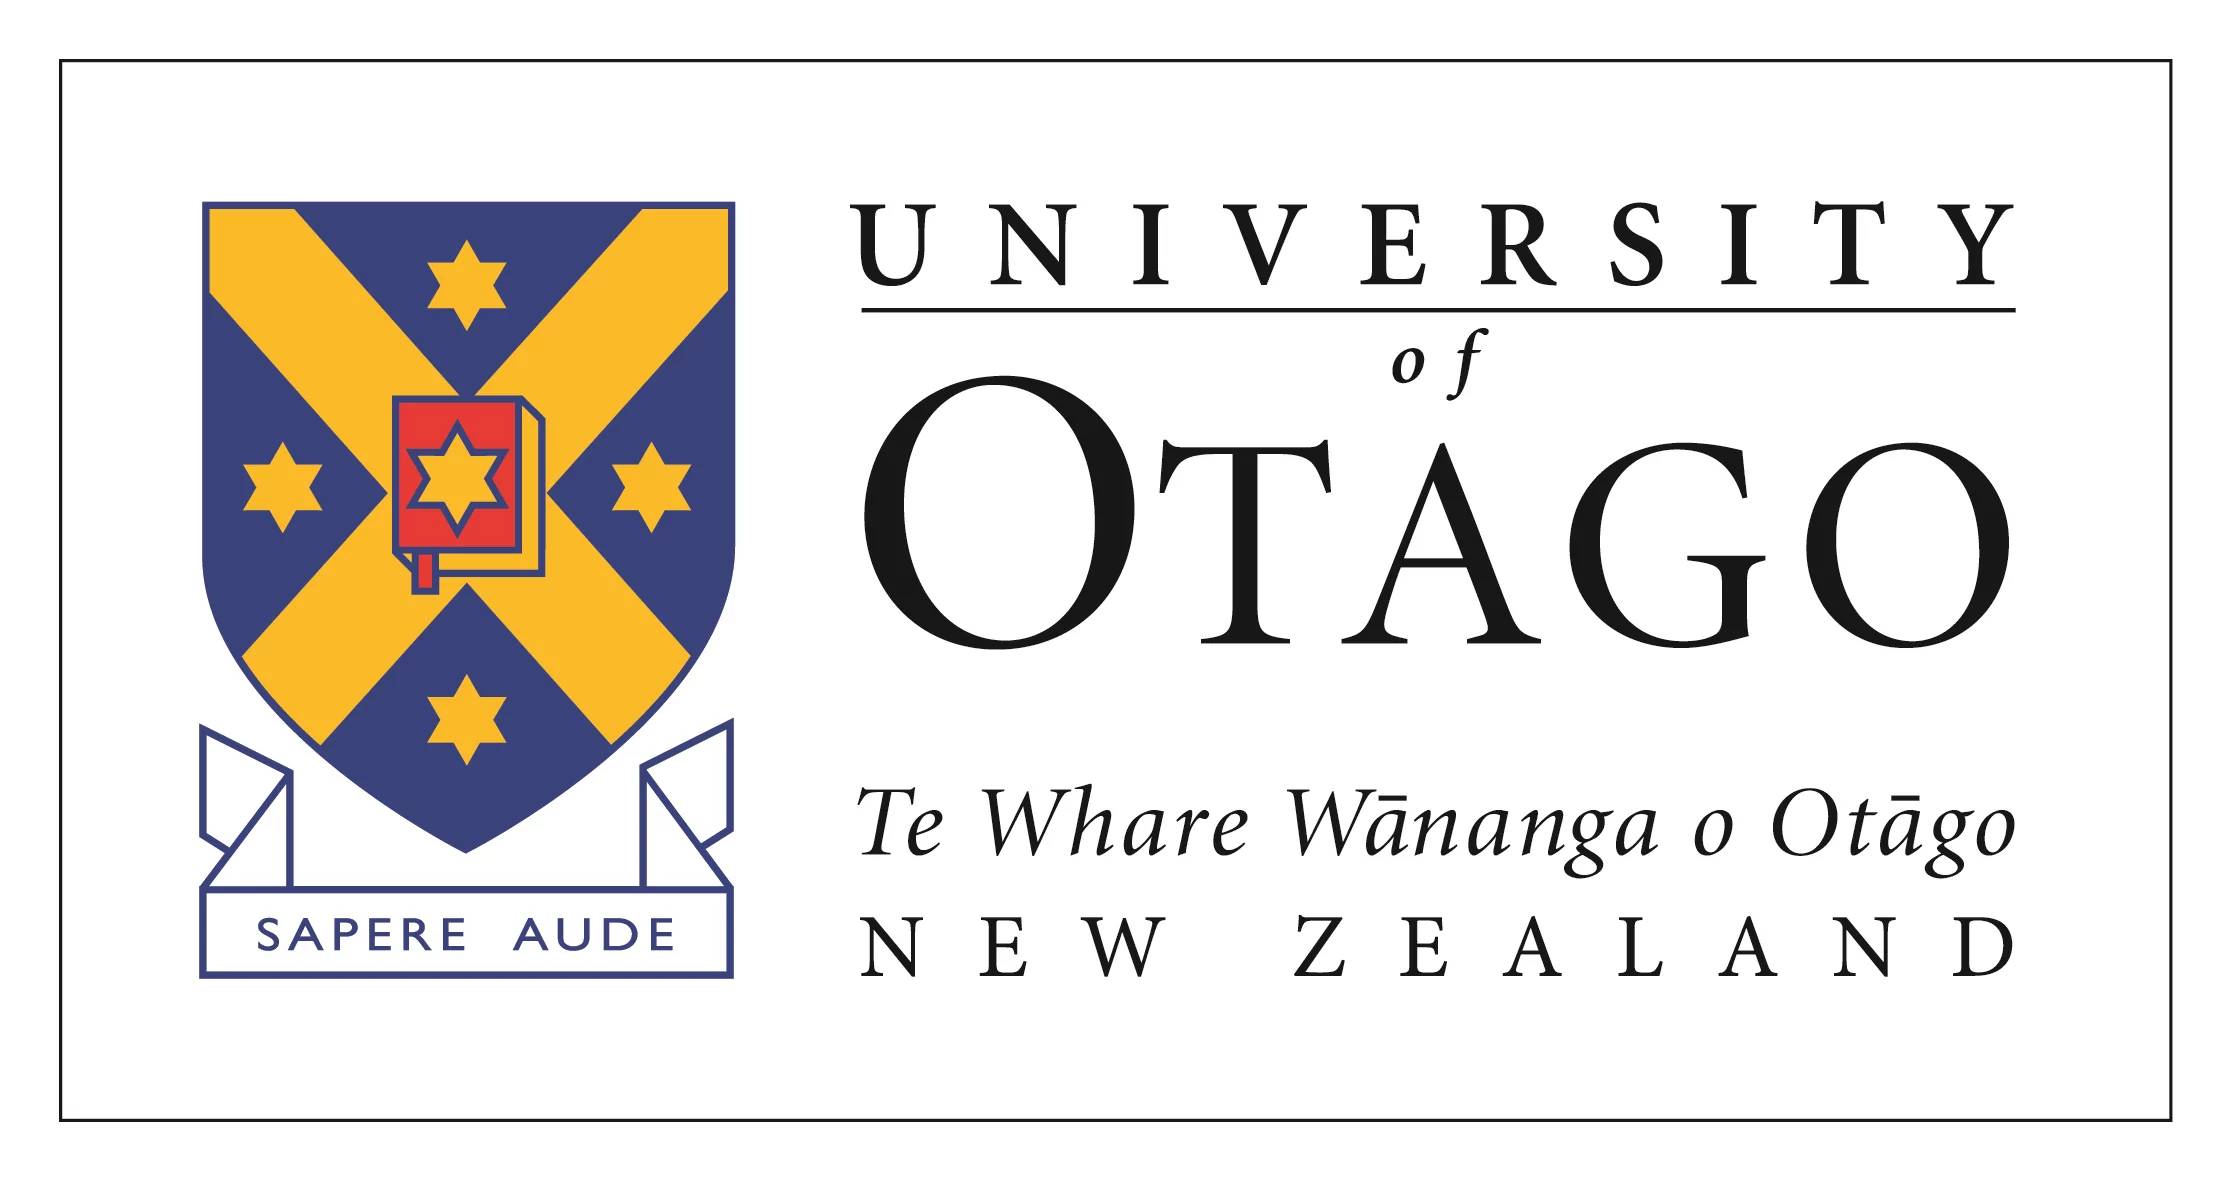 Bourse de Master de cours de l’Université d’Otago en Nouvelle-Zélande 2023/24